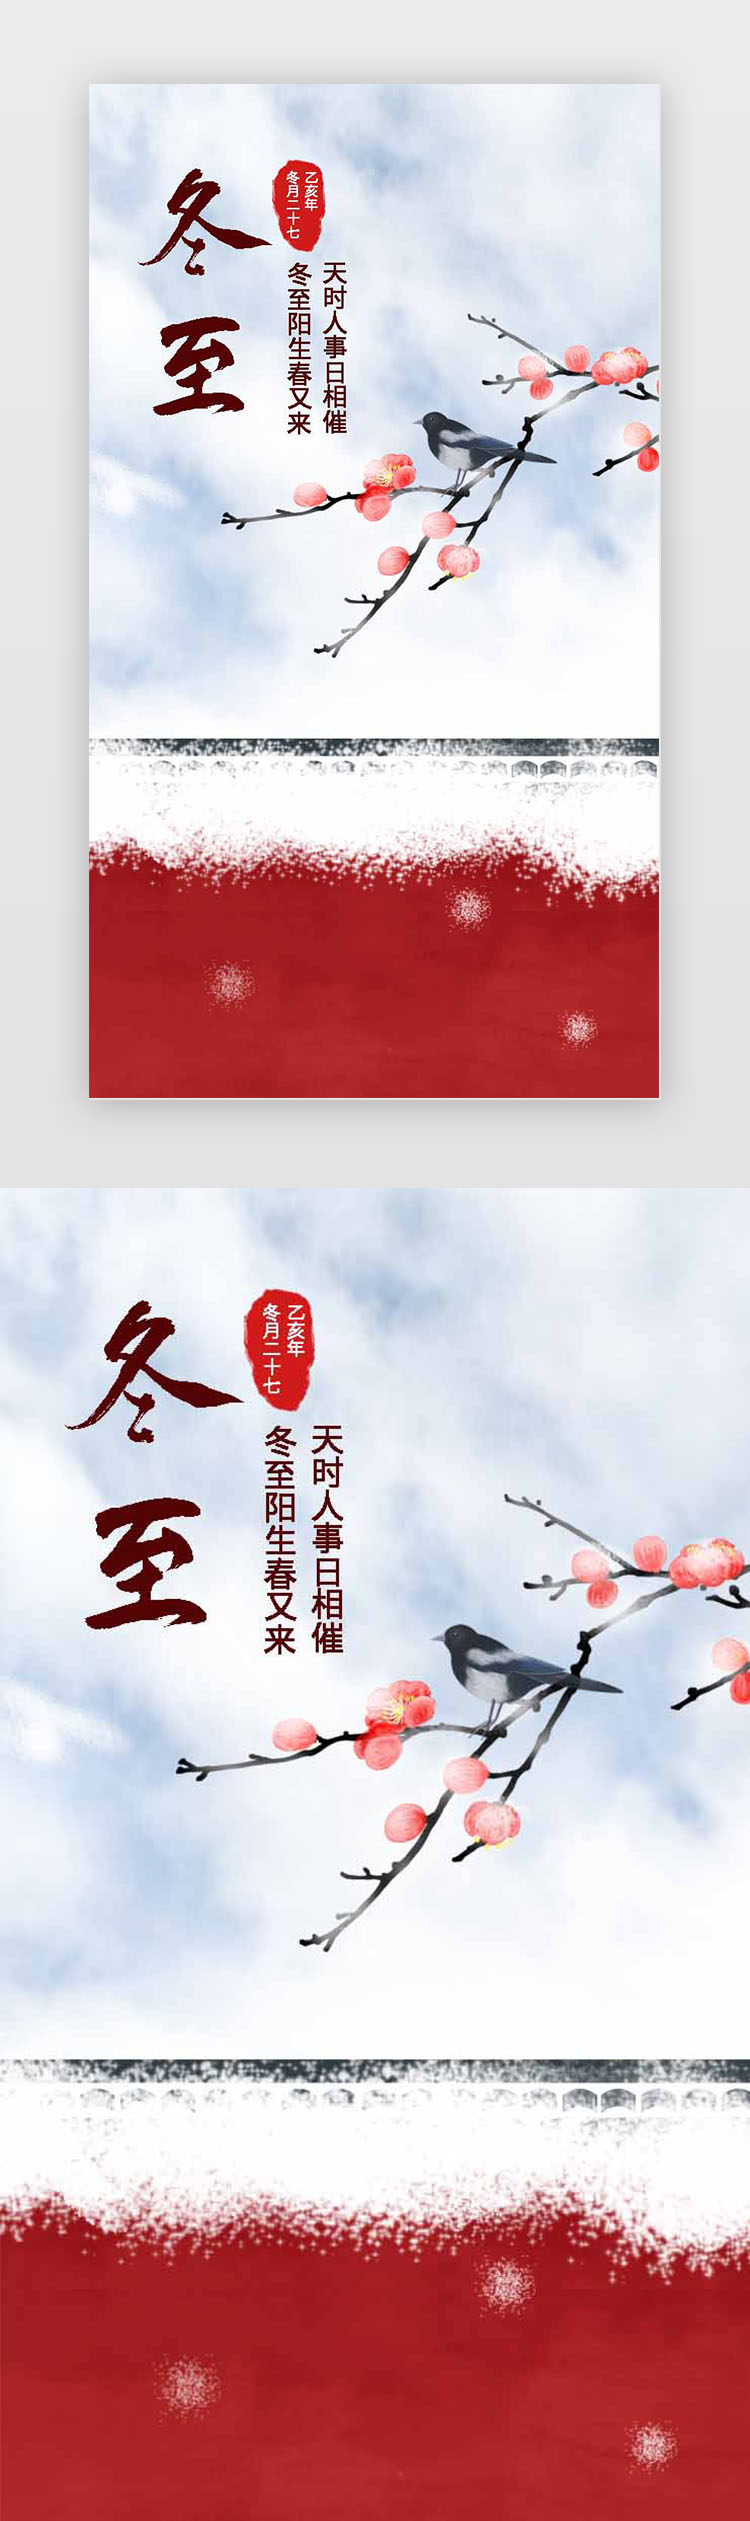 红白红墙雪景中国风大气冬至节日促销闪屏图片